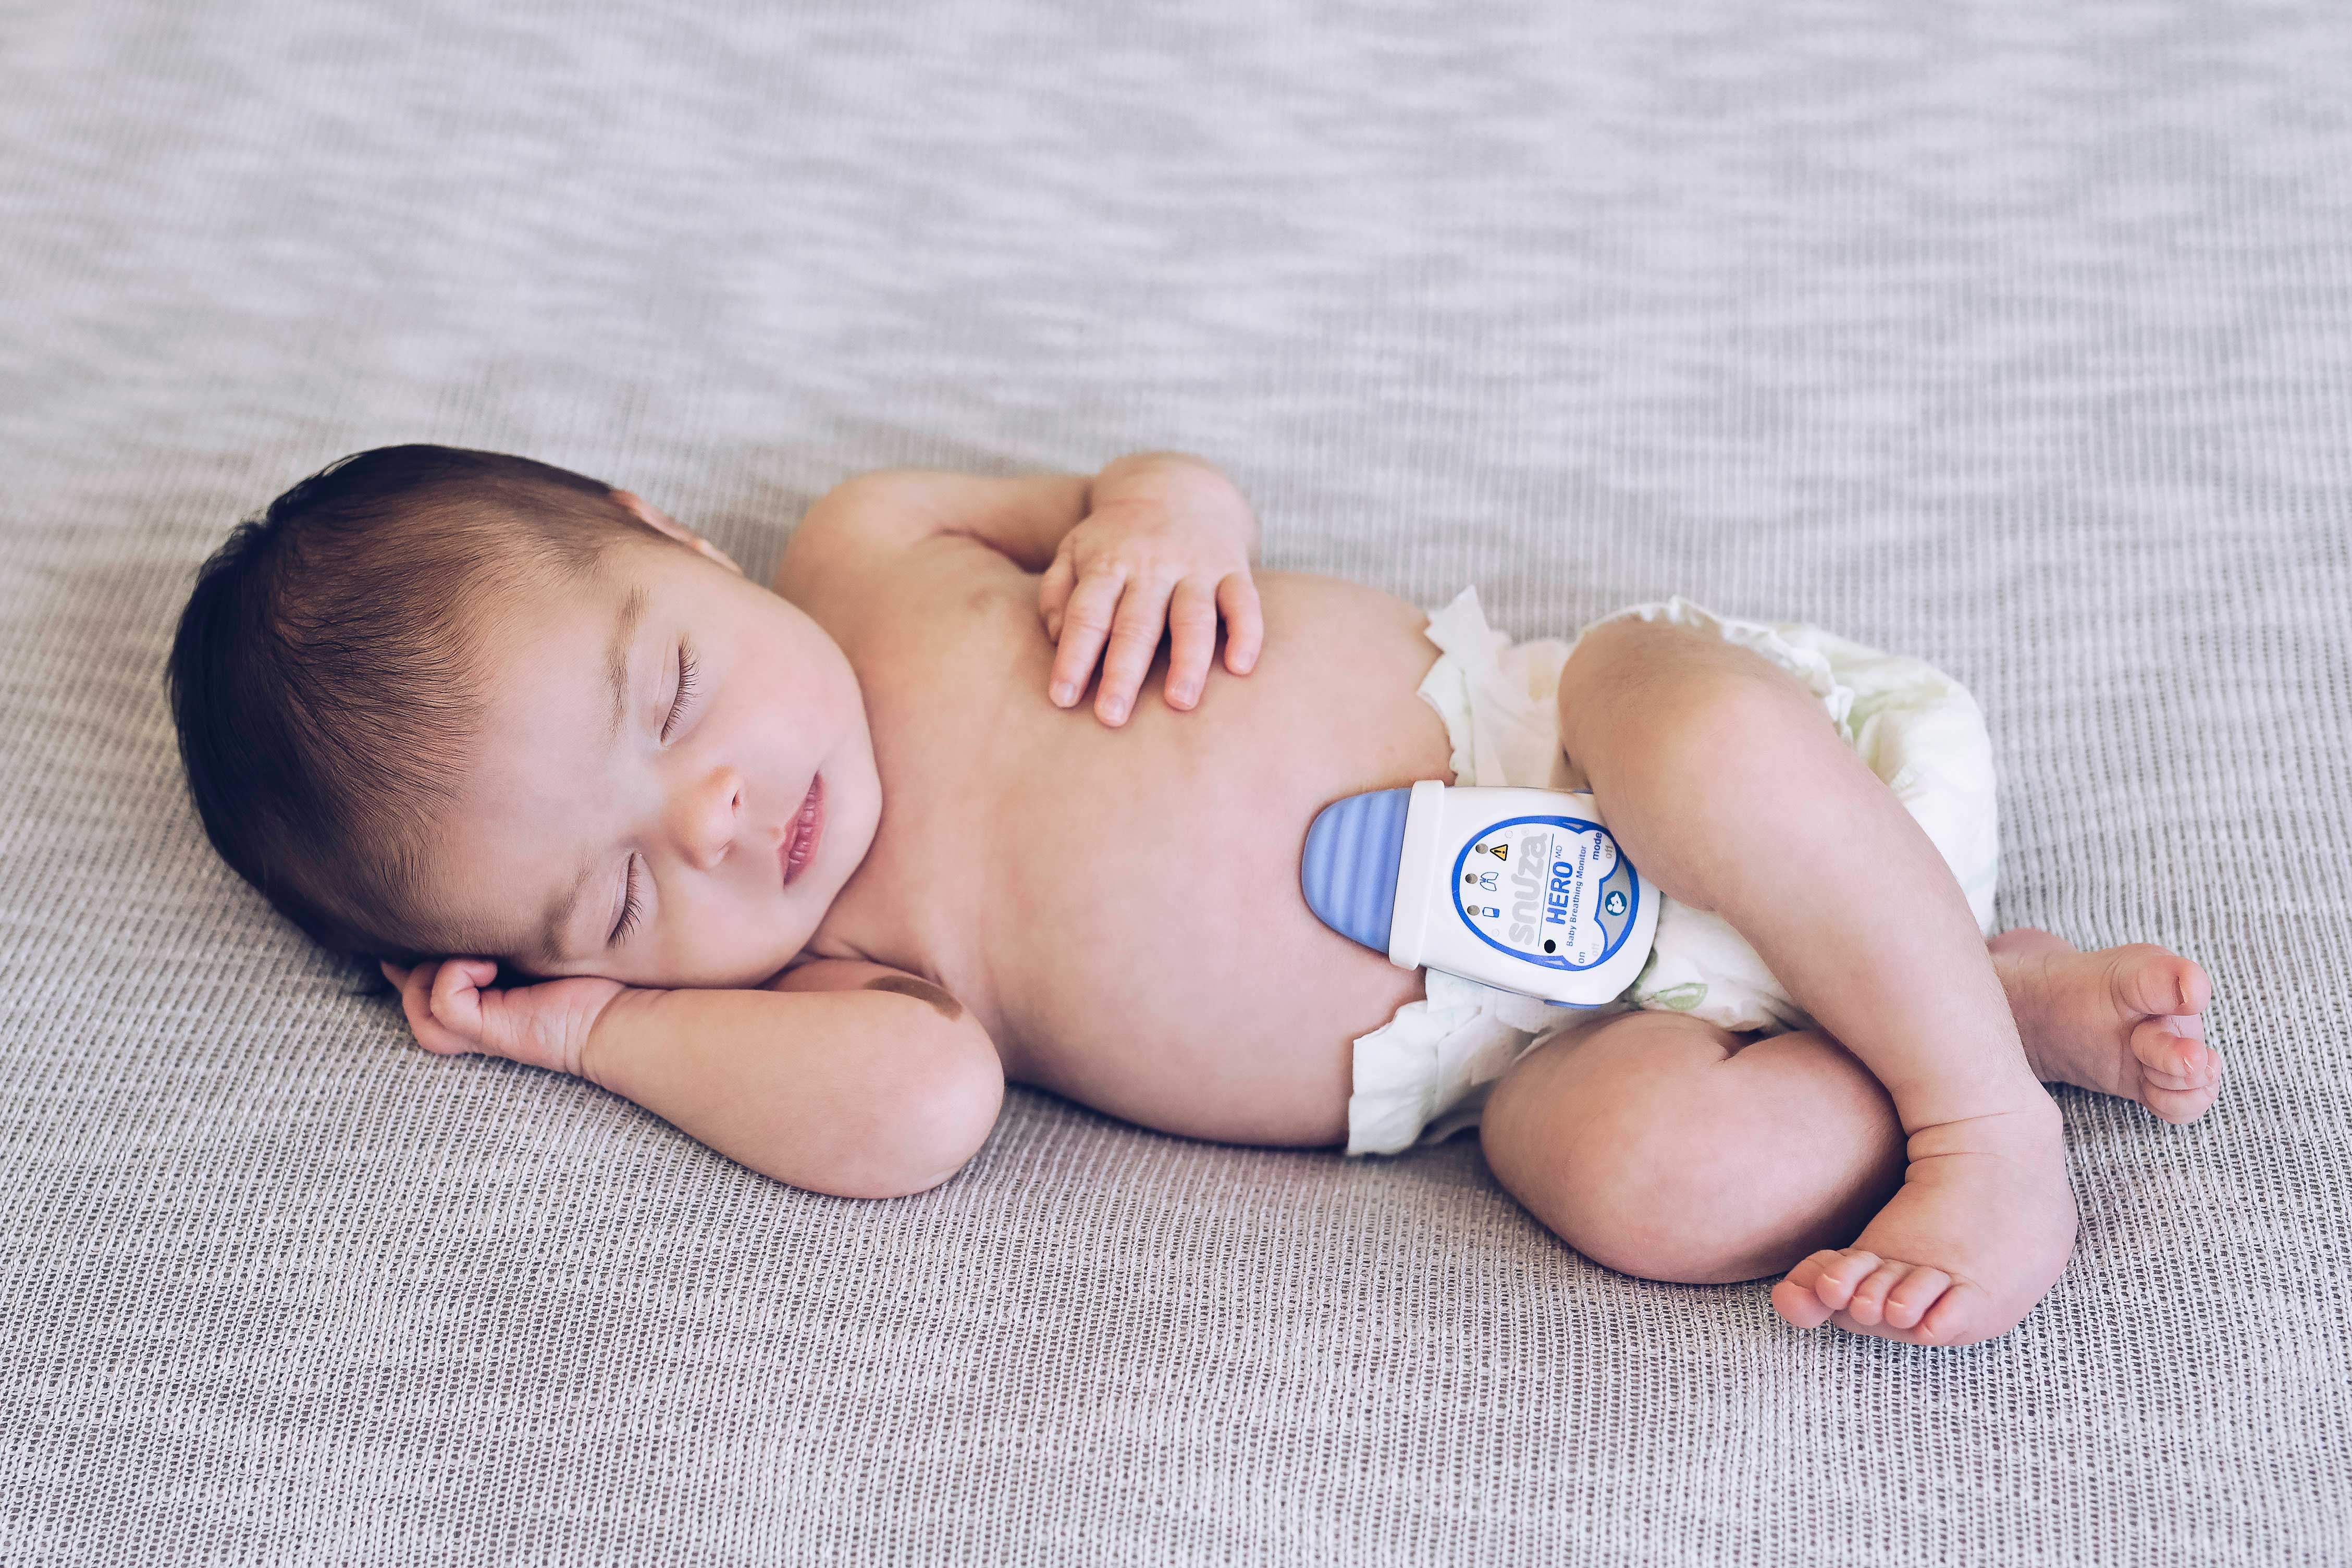 Quello che devi sapere prima di acquistare un baby monitor digitale